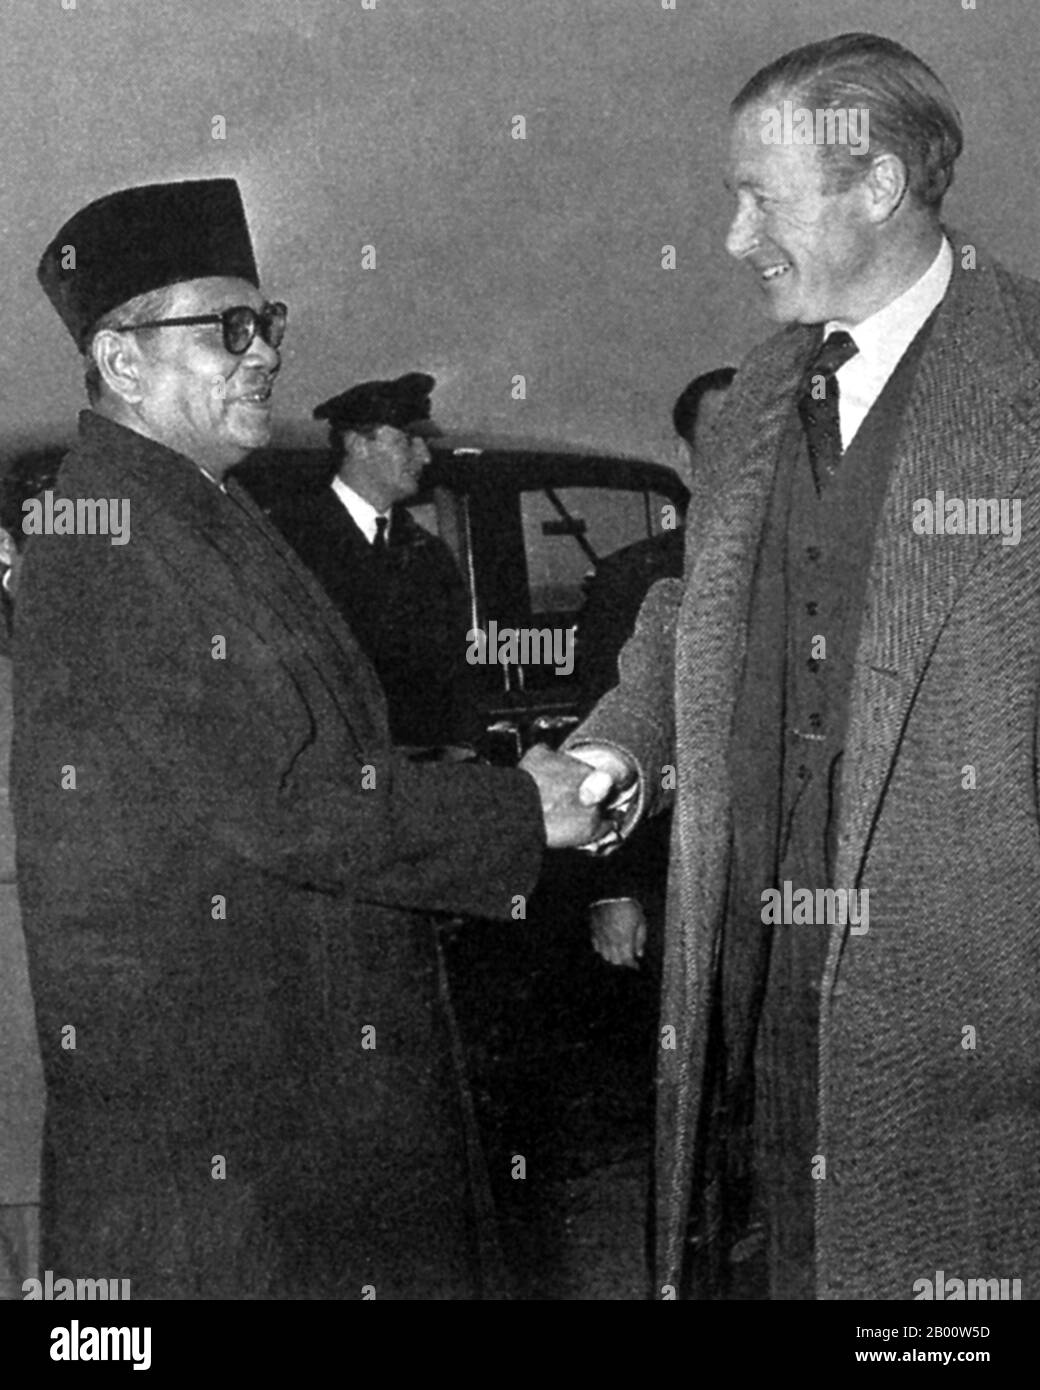 Malaysia: Tunku Abdul Rahman mit dem britischen Commonwealth-Minister Duncan Sandys im Jahr 1961. Tunku Abdul Rahman Putra Al-Haj ibni Almarhum Sultan Abdul Hamid Halim Shah, AC, CH (8. Februar 1903 – 6. Dezember 1990) war bekannt als "Tunku" (fürstlicher Titel in Malaysia), Und auch Bapa Kemerdekaan (Vater der Unabhängigkeit) oder Bapa Malaysia (Vater von Malaysia) genannt, war ab 1955 Chief Minister der Föderation von Malaya und der erste Premierminister des Landes aus der Unabhängigkeit im Jahr 1957. Er blieb als Premierminister, nachdem Sabah, Sarawak und Singapur der Föderation 1963 beigetreten waren, um Malaysia zu bilden. Stockfoto